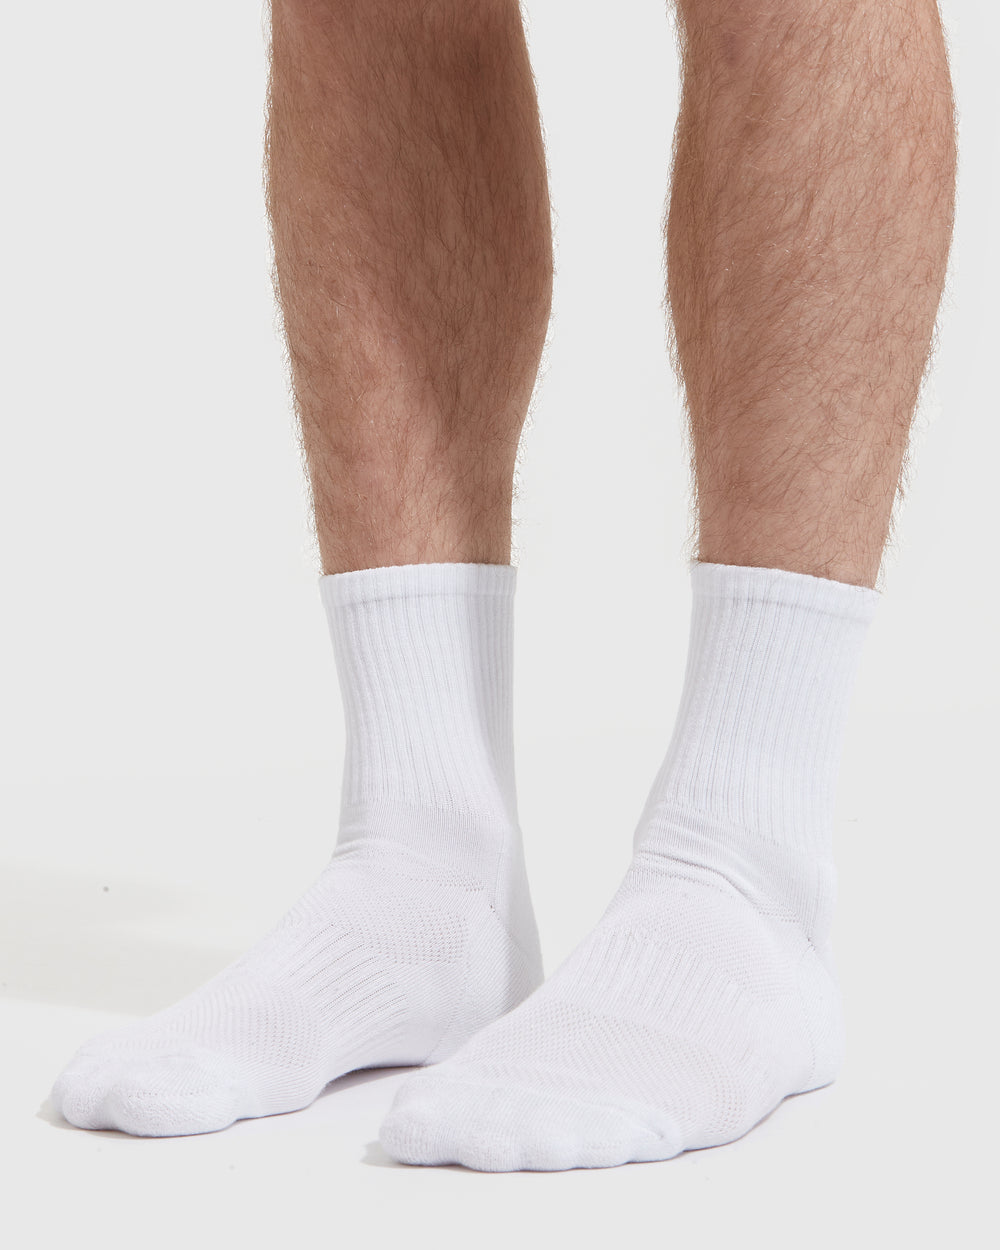 True Rebel Socks FCK NZS White, 10,90 CHF